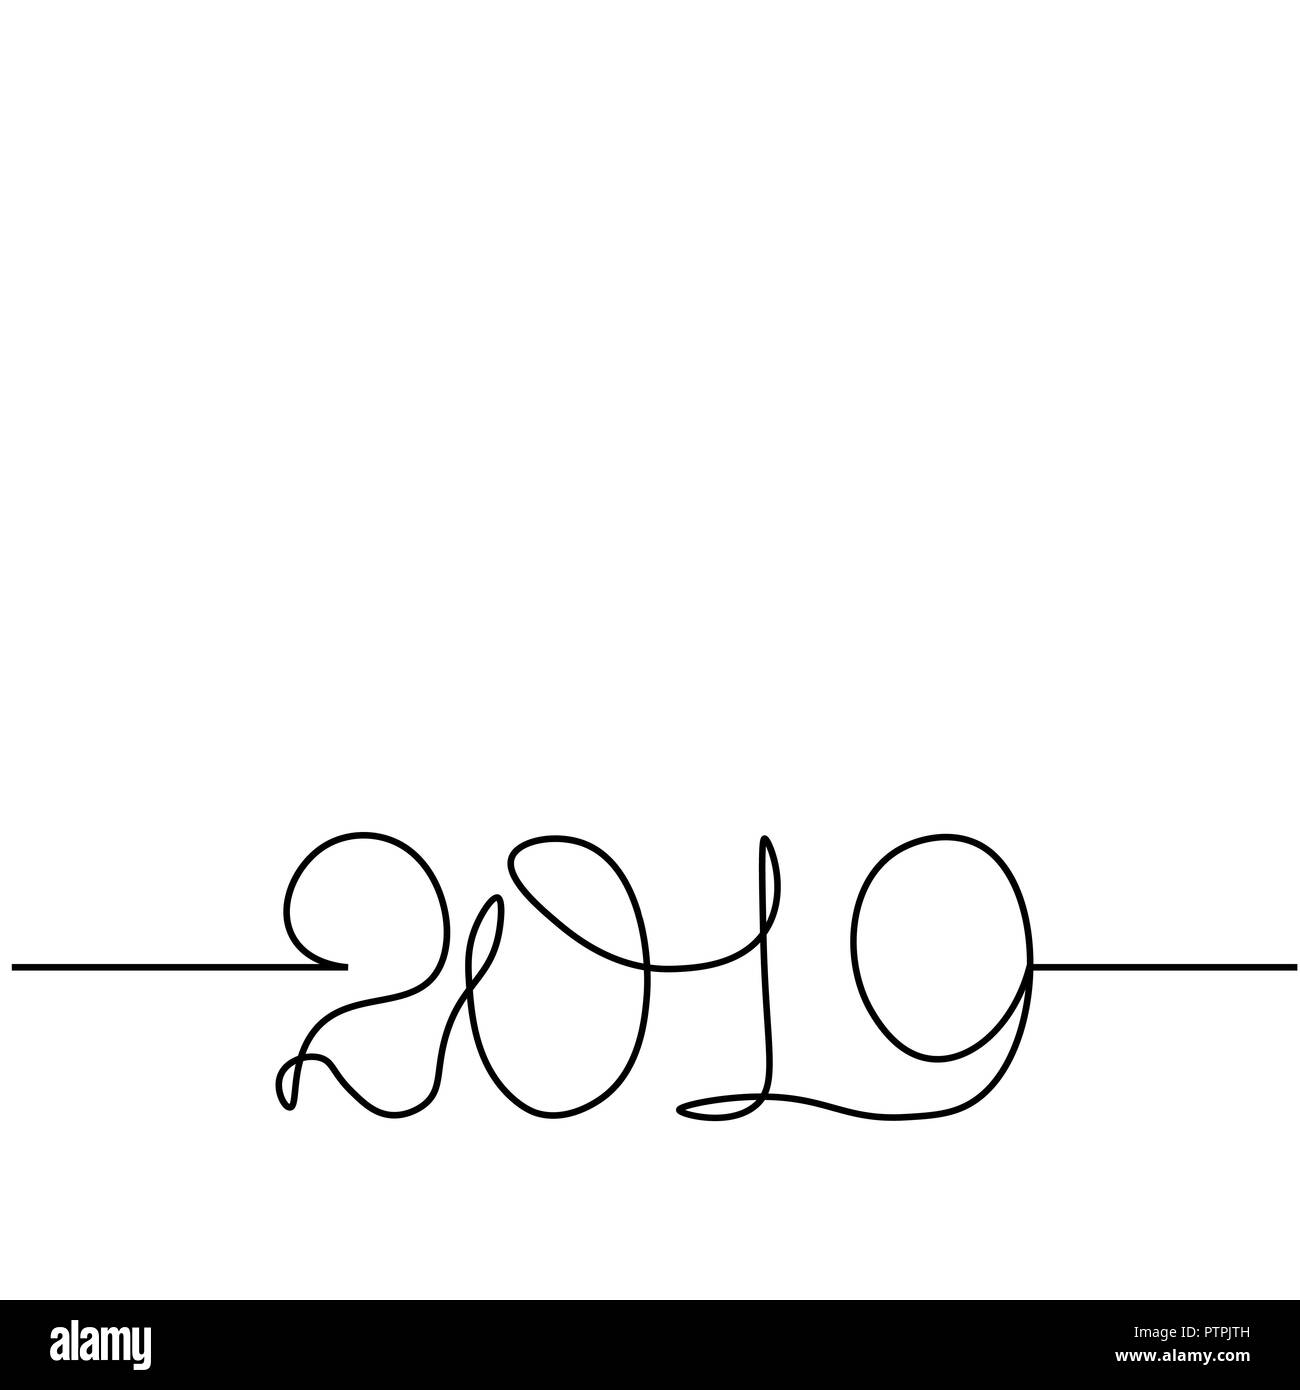 Eine durchgehende Linie zeichnen 2019. Vektor neues Jahr Abbildung auf weißem Hintergrund Stock Vektor